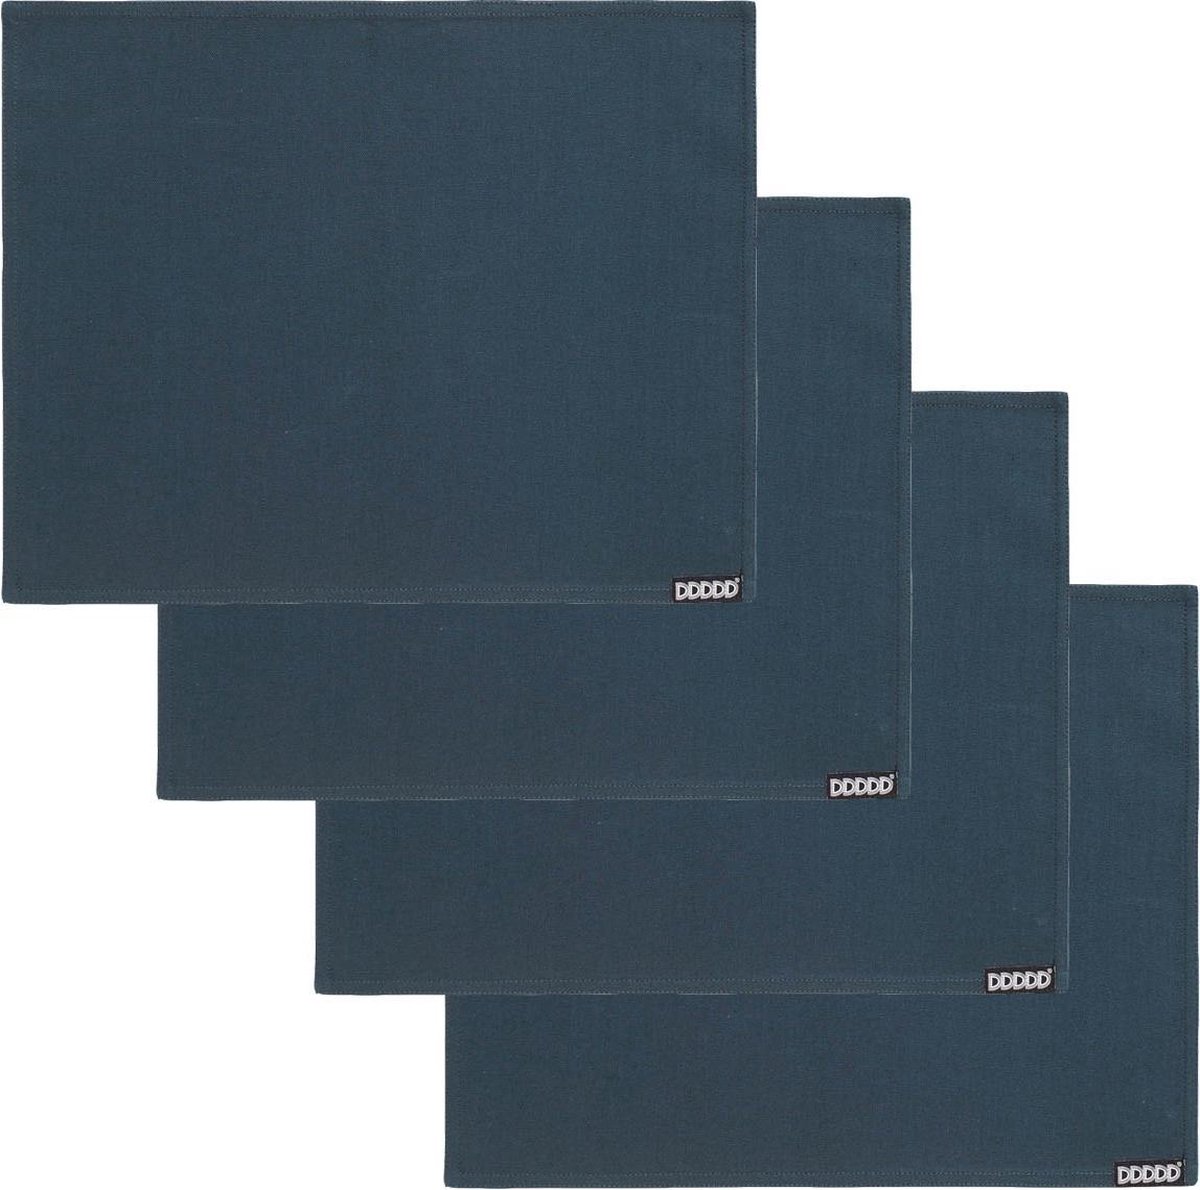 DDDDD Kit Placemat - Set van 4 - Luxe Tafeltextiel - 35x45 cm - Marineblauw